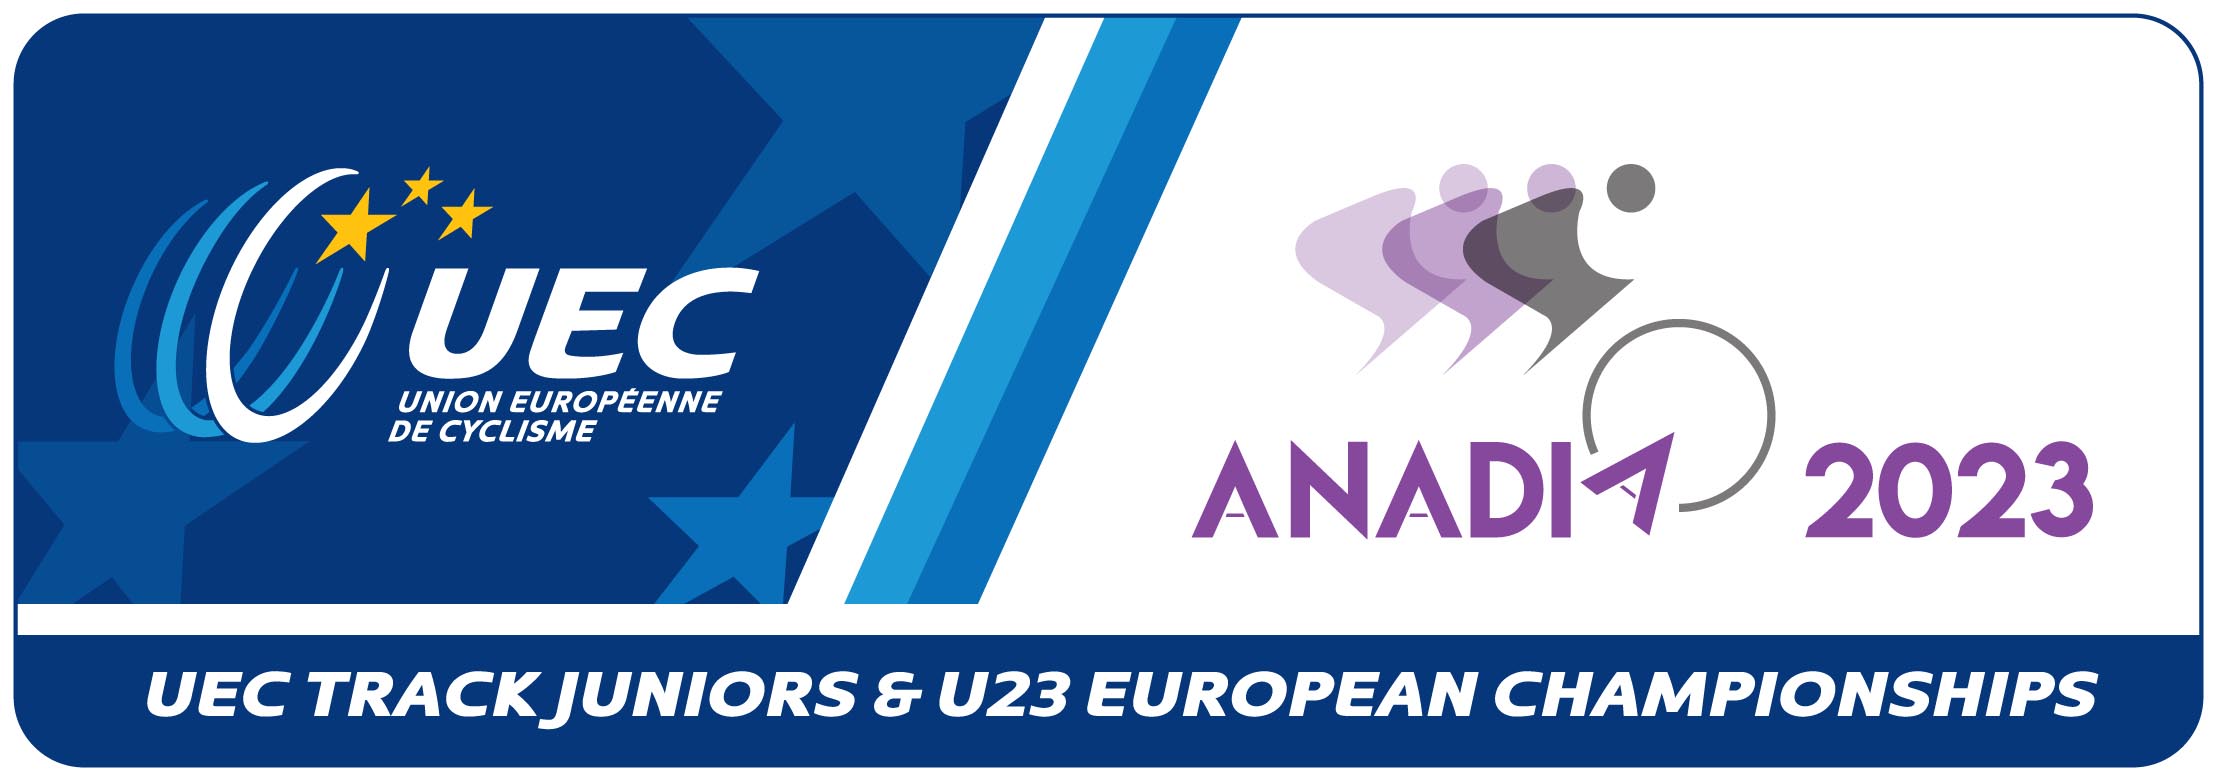 UEC Track Juniors & U23 European Championship